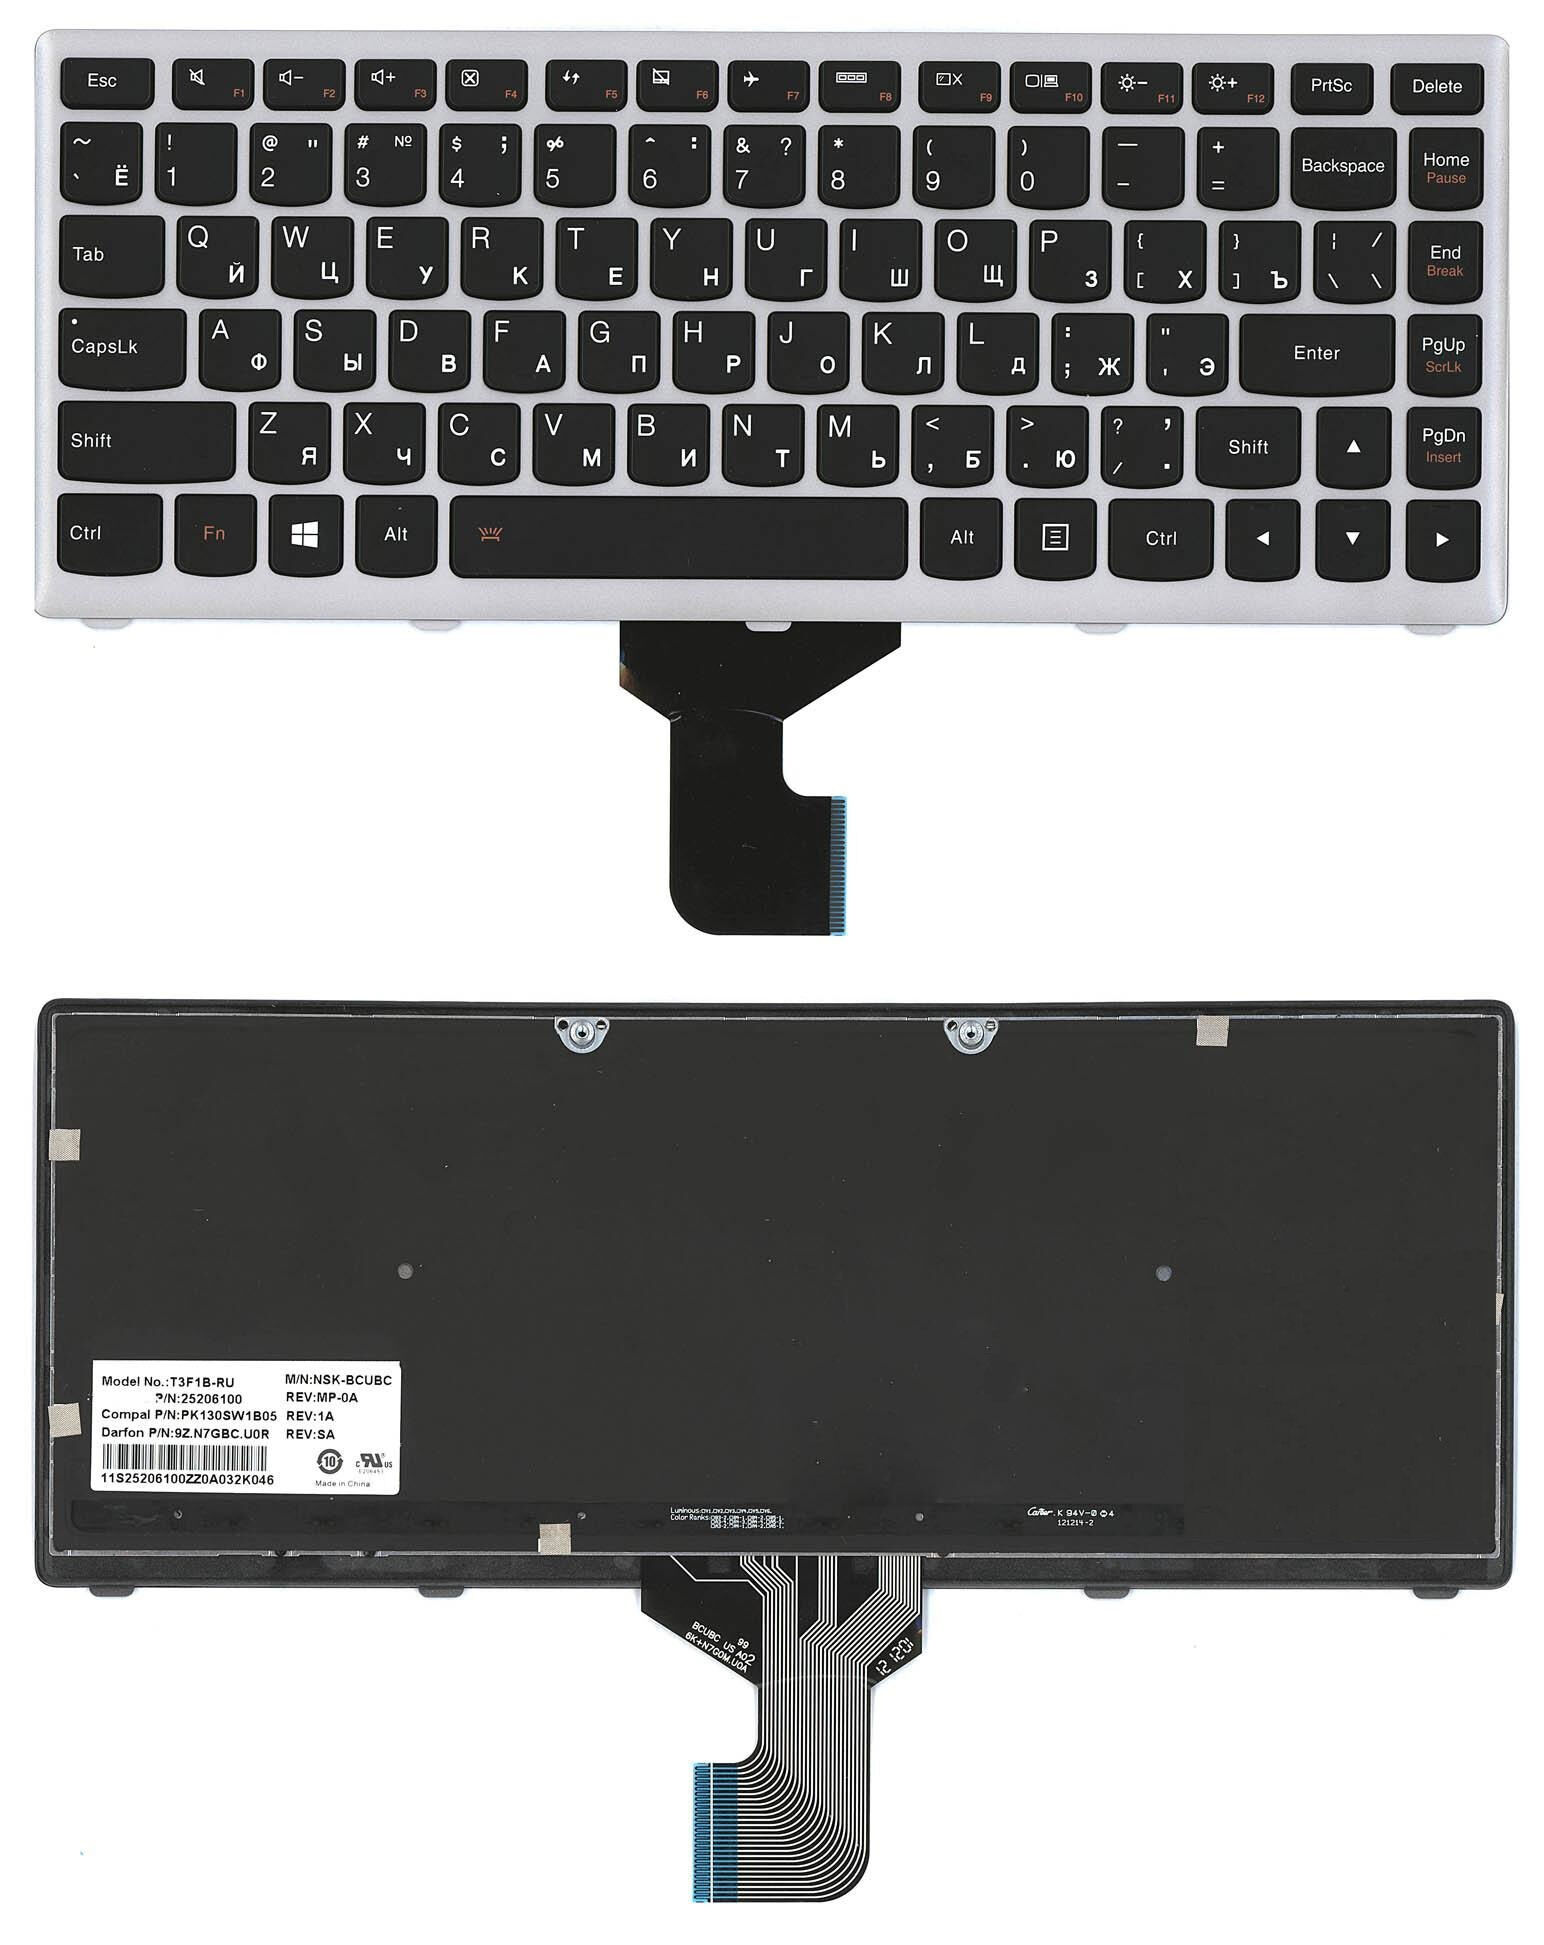 Клавиатура для ноутбука Lenovo Z400 с подсветкой p/n: 25206100, T3F1-RU, T3F1B-RU, NSK-BCUBC